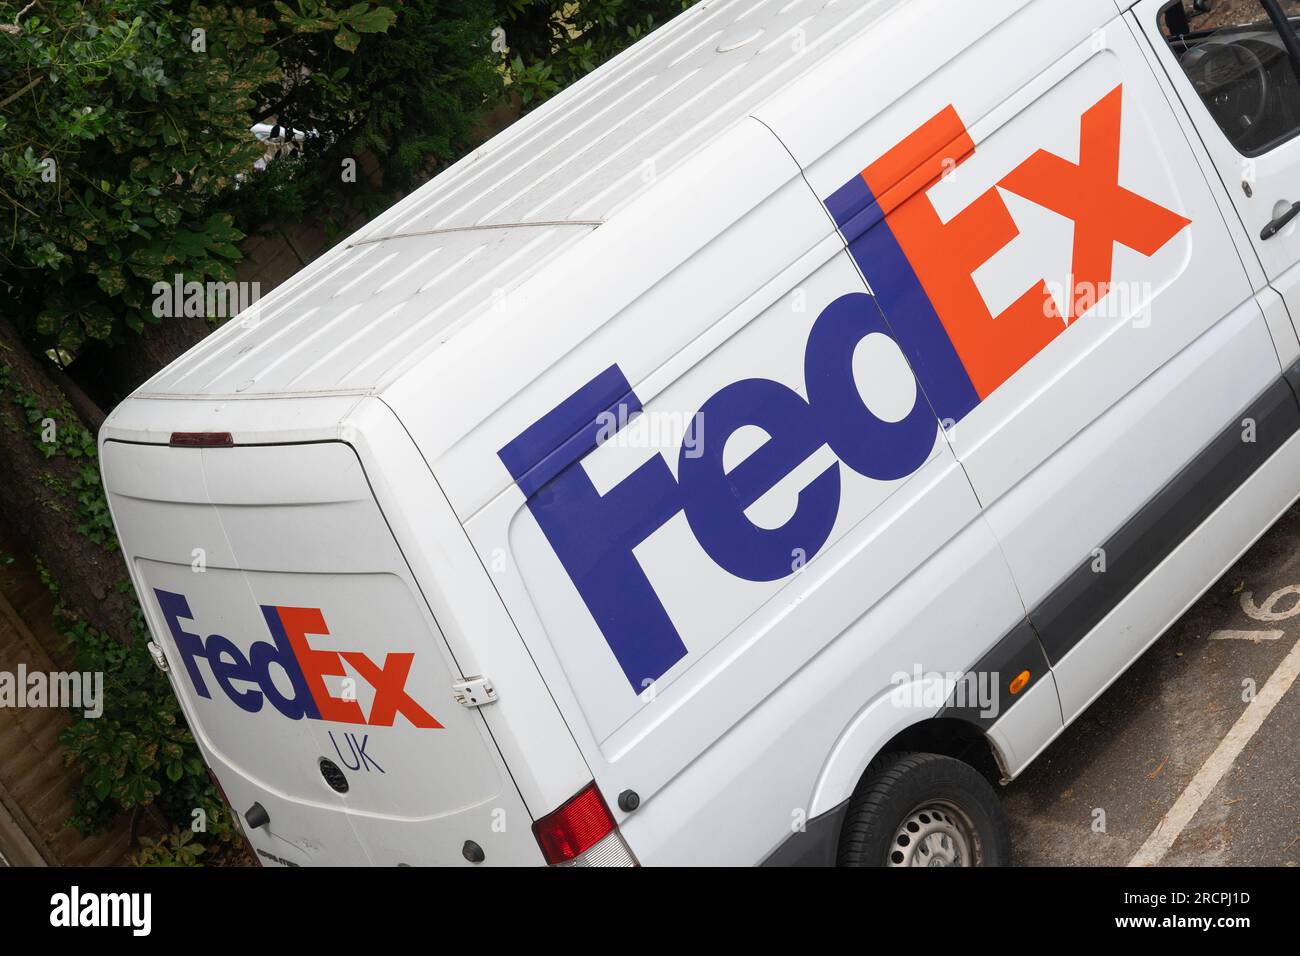 Fourgon de livraison blanc FedEx avec logo FedEx et décoration garé devant une maison en Angleterre. Thème : envois b2b, livraison express, livraison de colis Banque D'Images